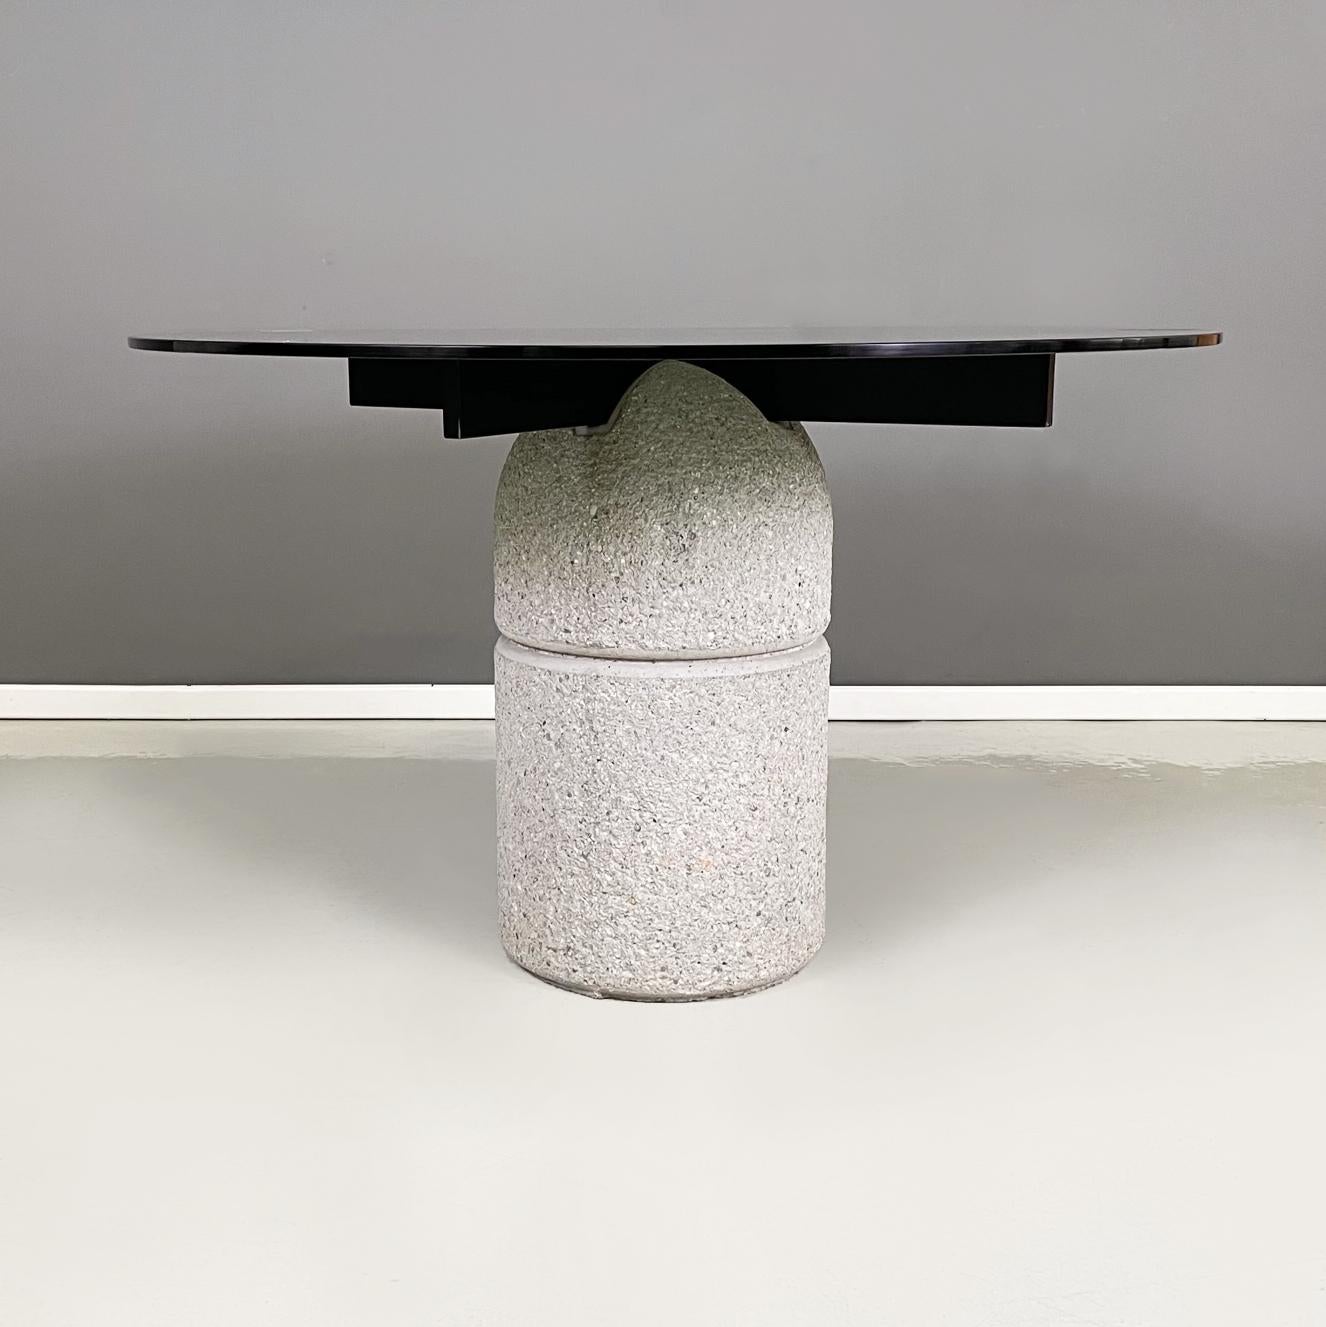 Table de salle à manger moderne italienne Paracarro par Giovanni Offredi pour Saporiti Italia, 1970
Table de salle à manger mod. Paracarro avec plateau rond en verre fumé. La structure qui soutient le sommet est constituée d'une croix en métal